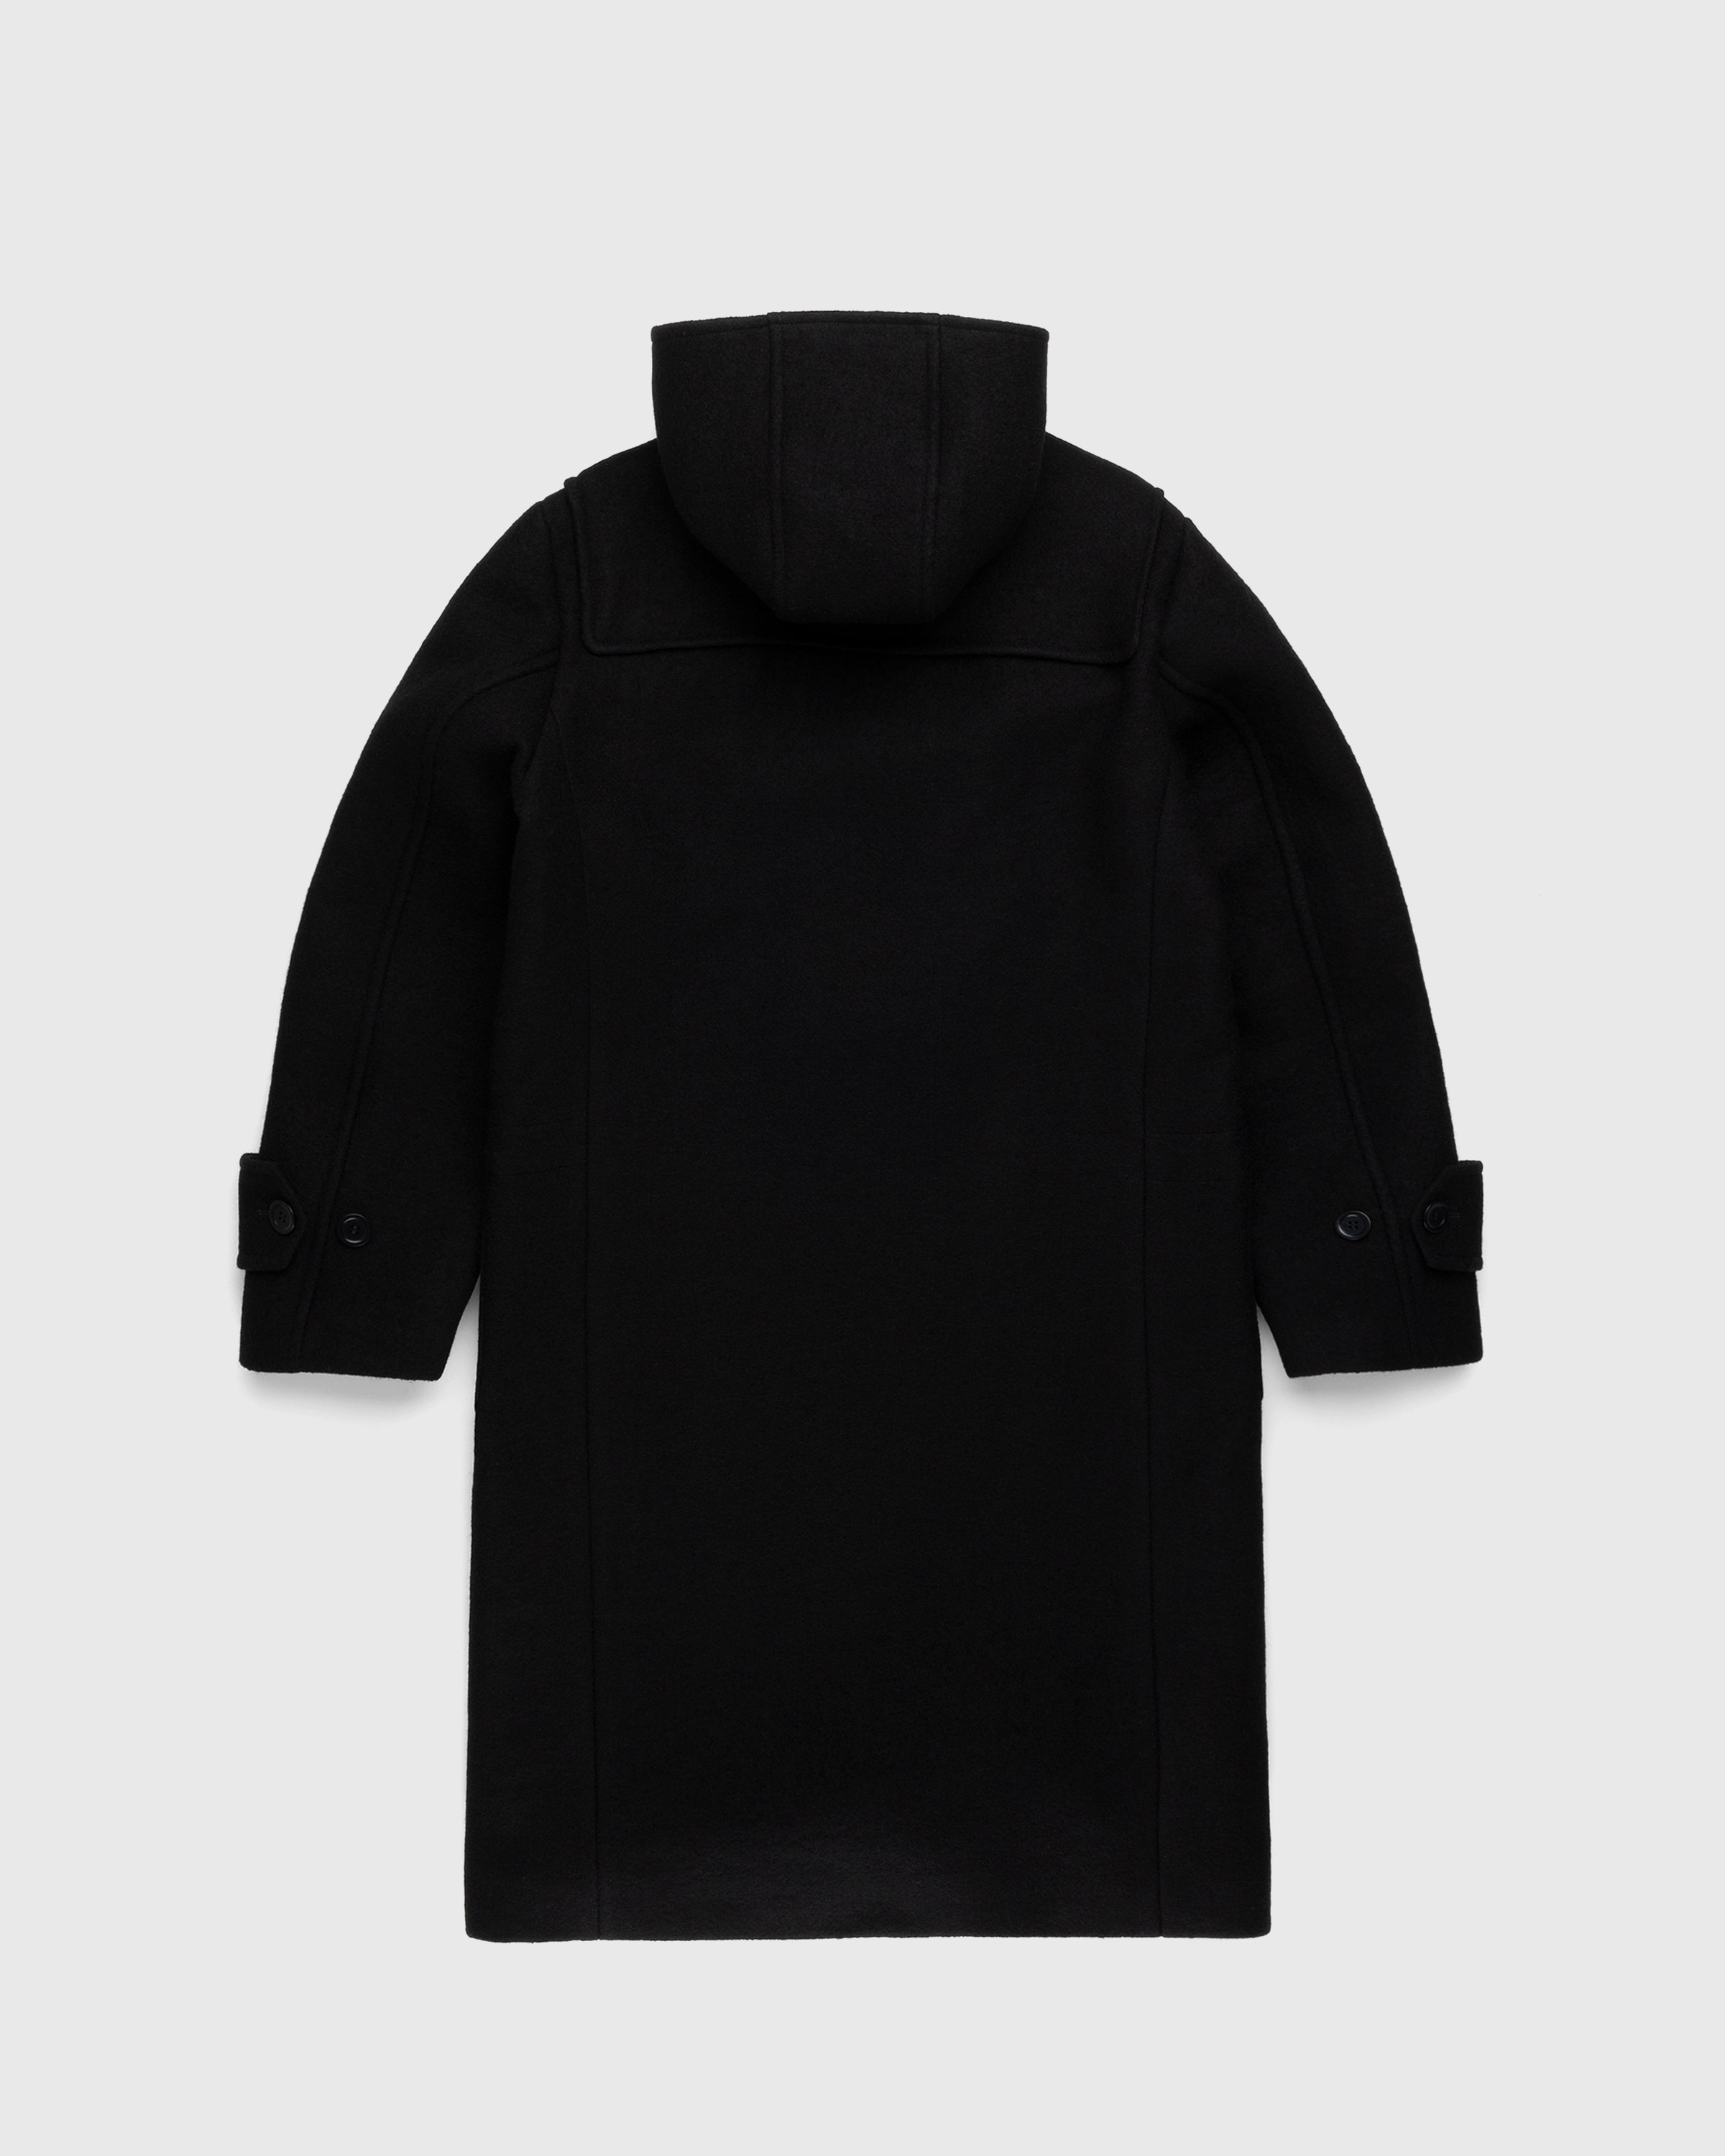 Wales Bonner - Eternity Duffle Coat Black - Clothing - Black - Image 2